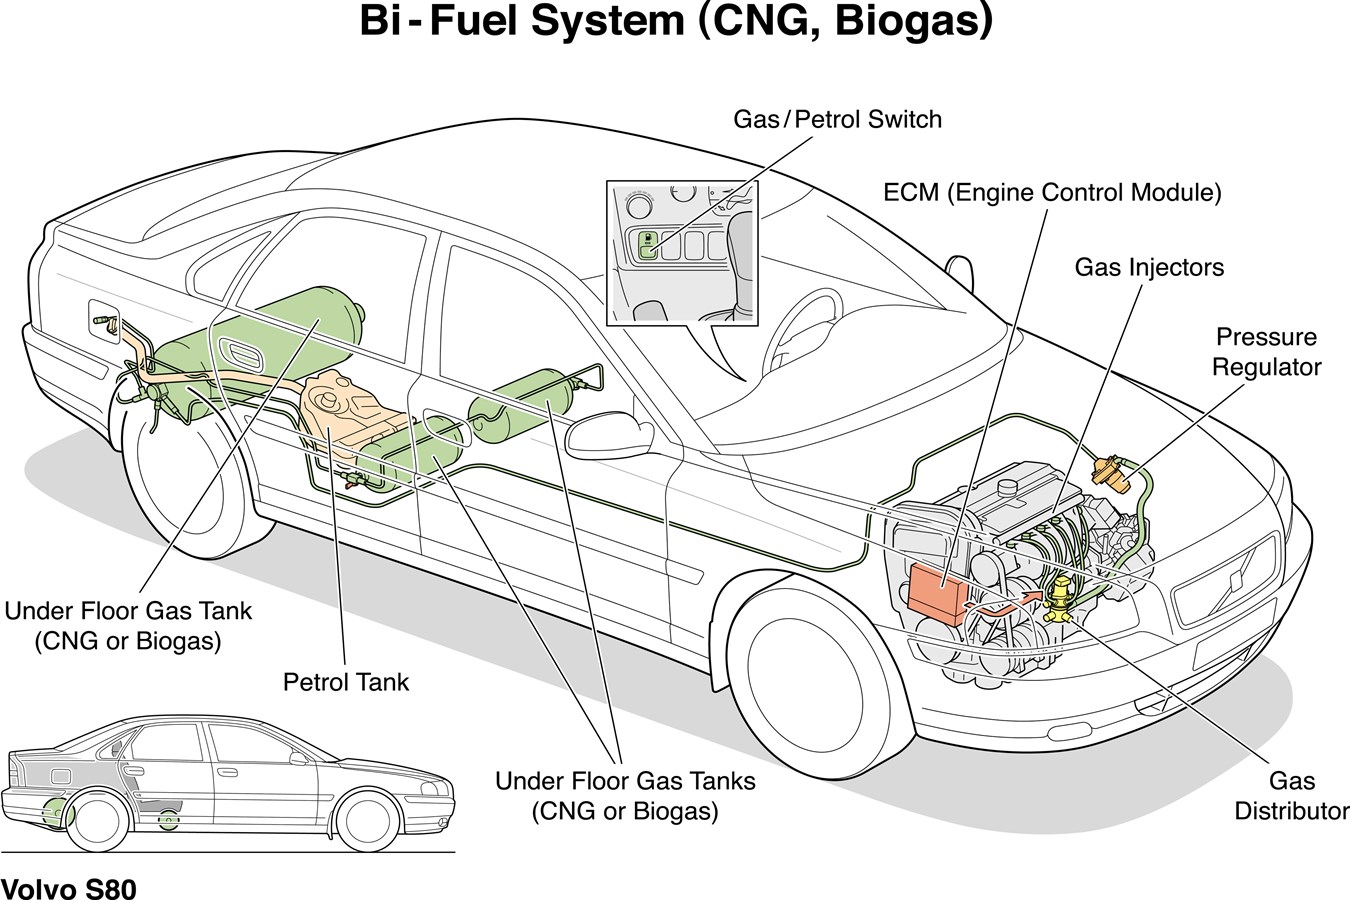 S80 Bi-Fuel, GNC